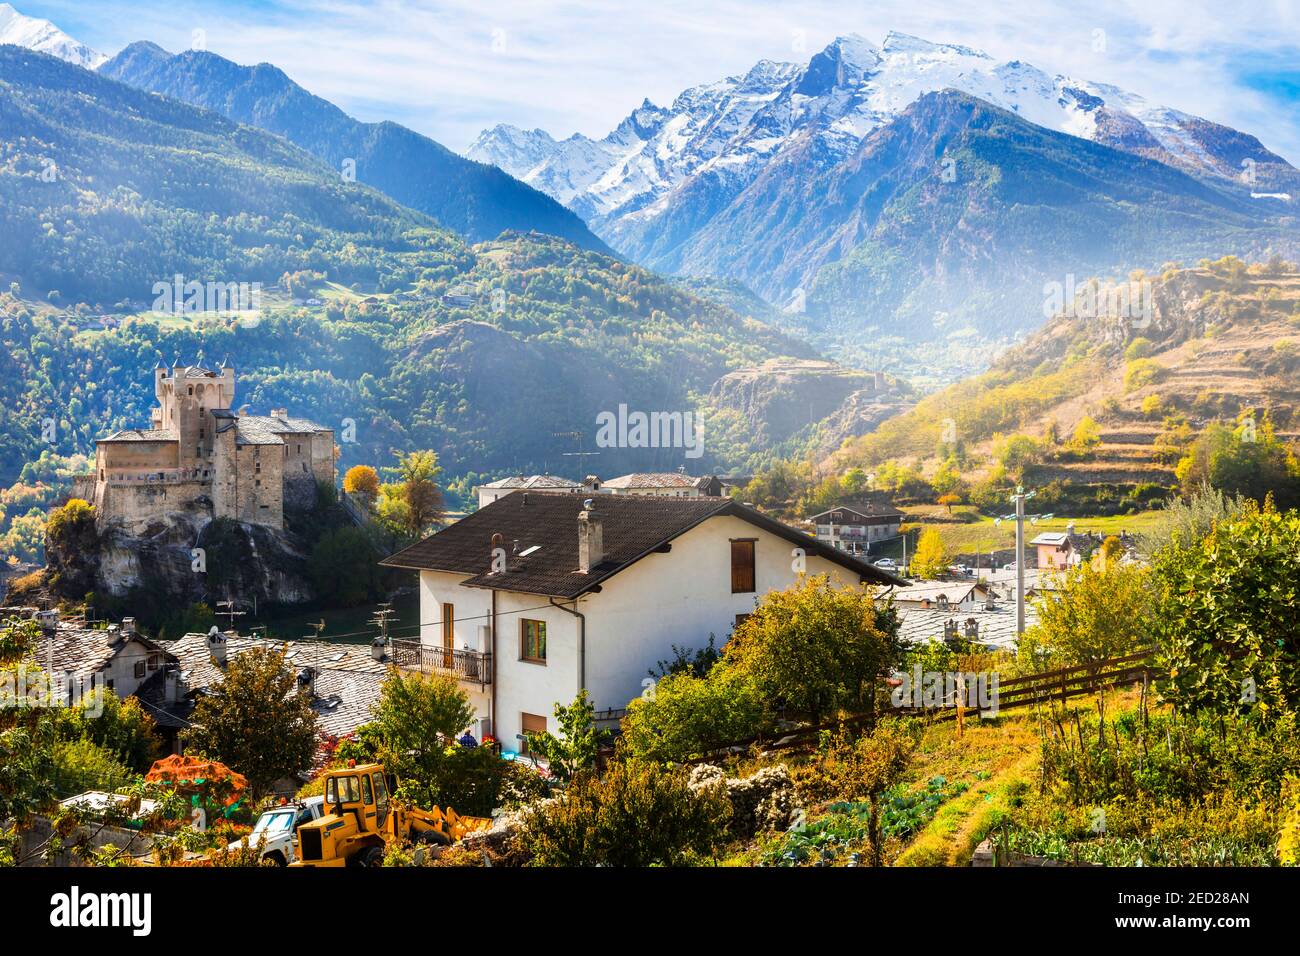 Schöne mittelalterliche Burgen des Aostatals - Saint Pierre, Norditalien Stockfoto